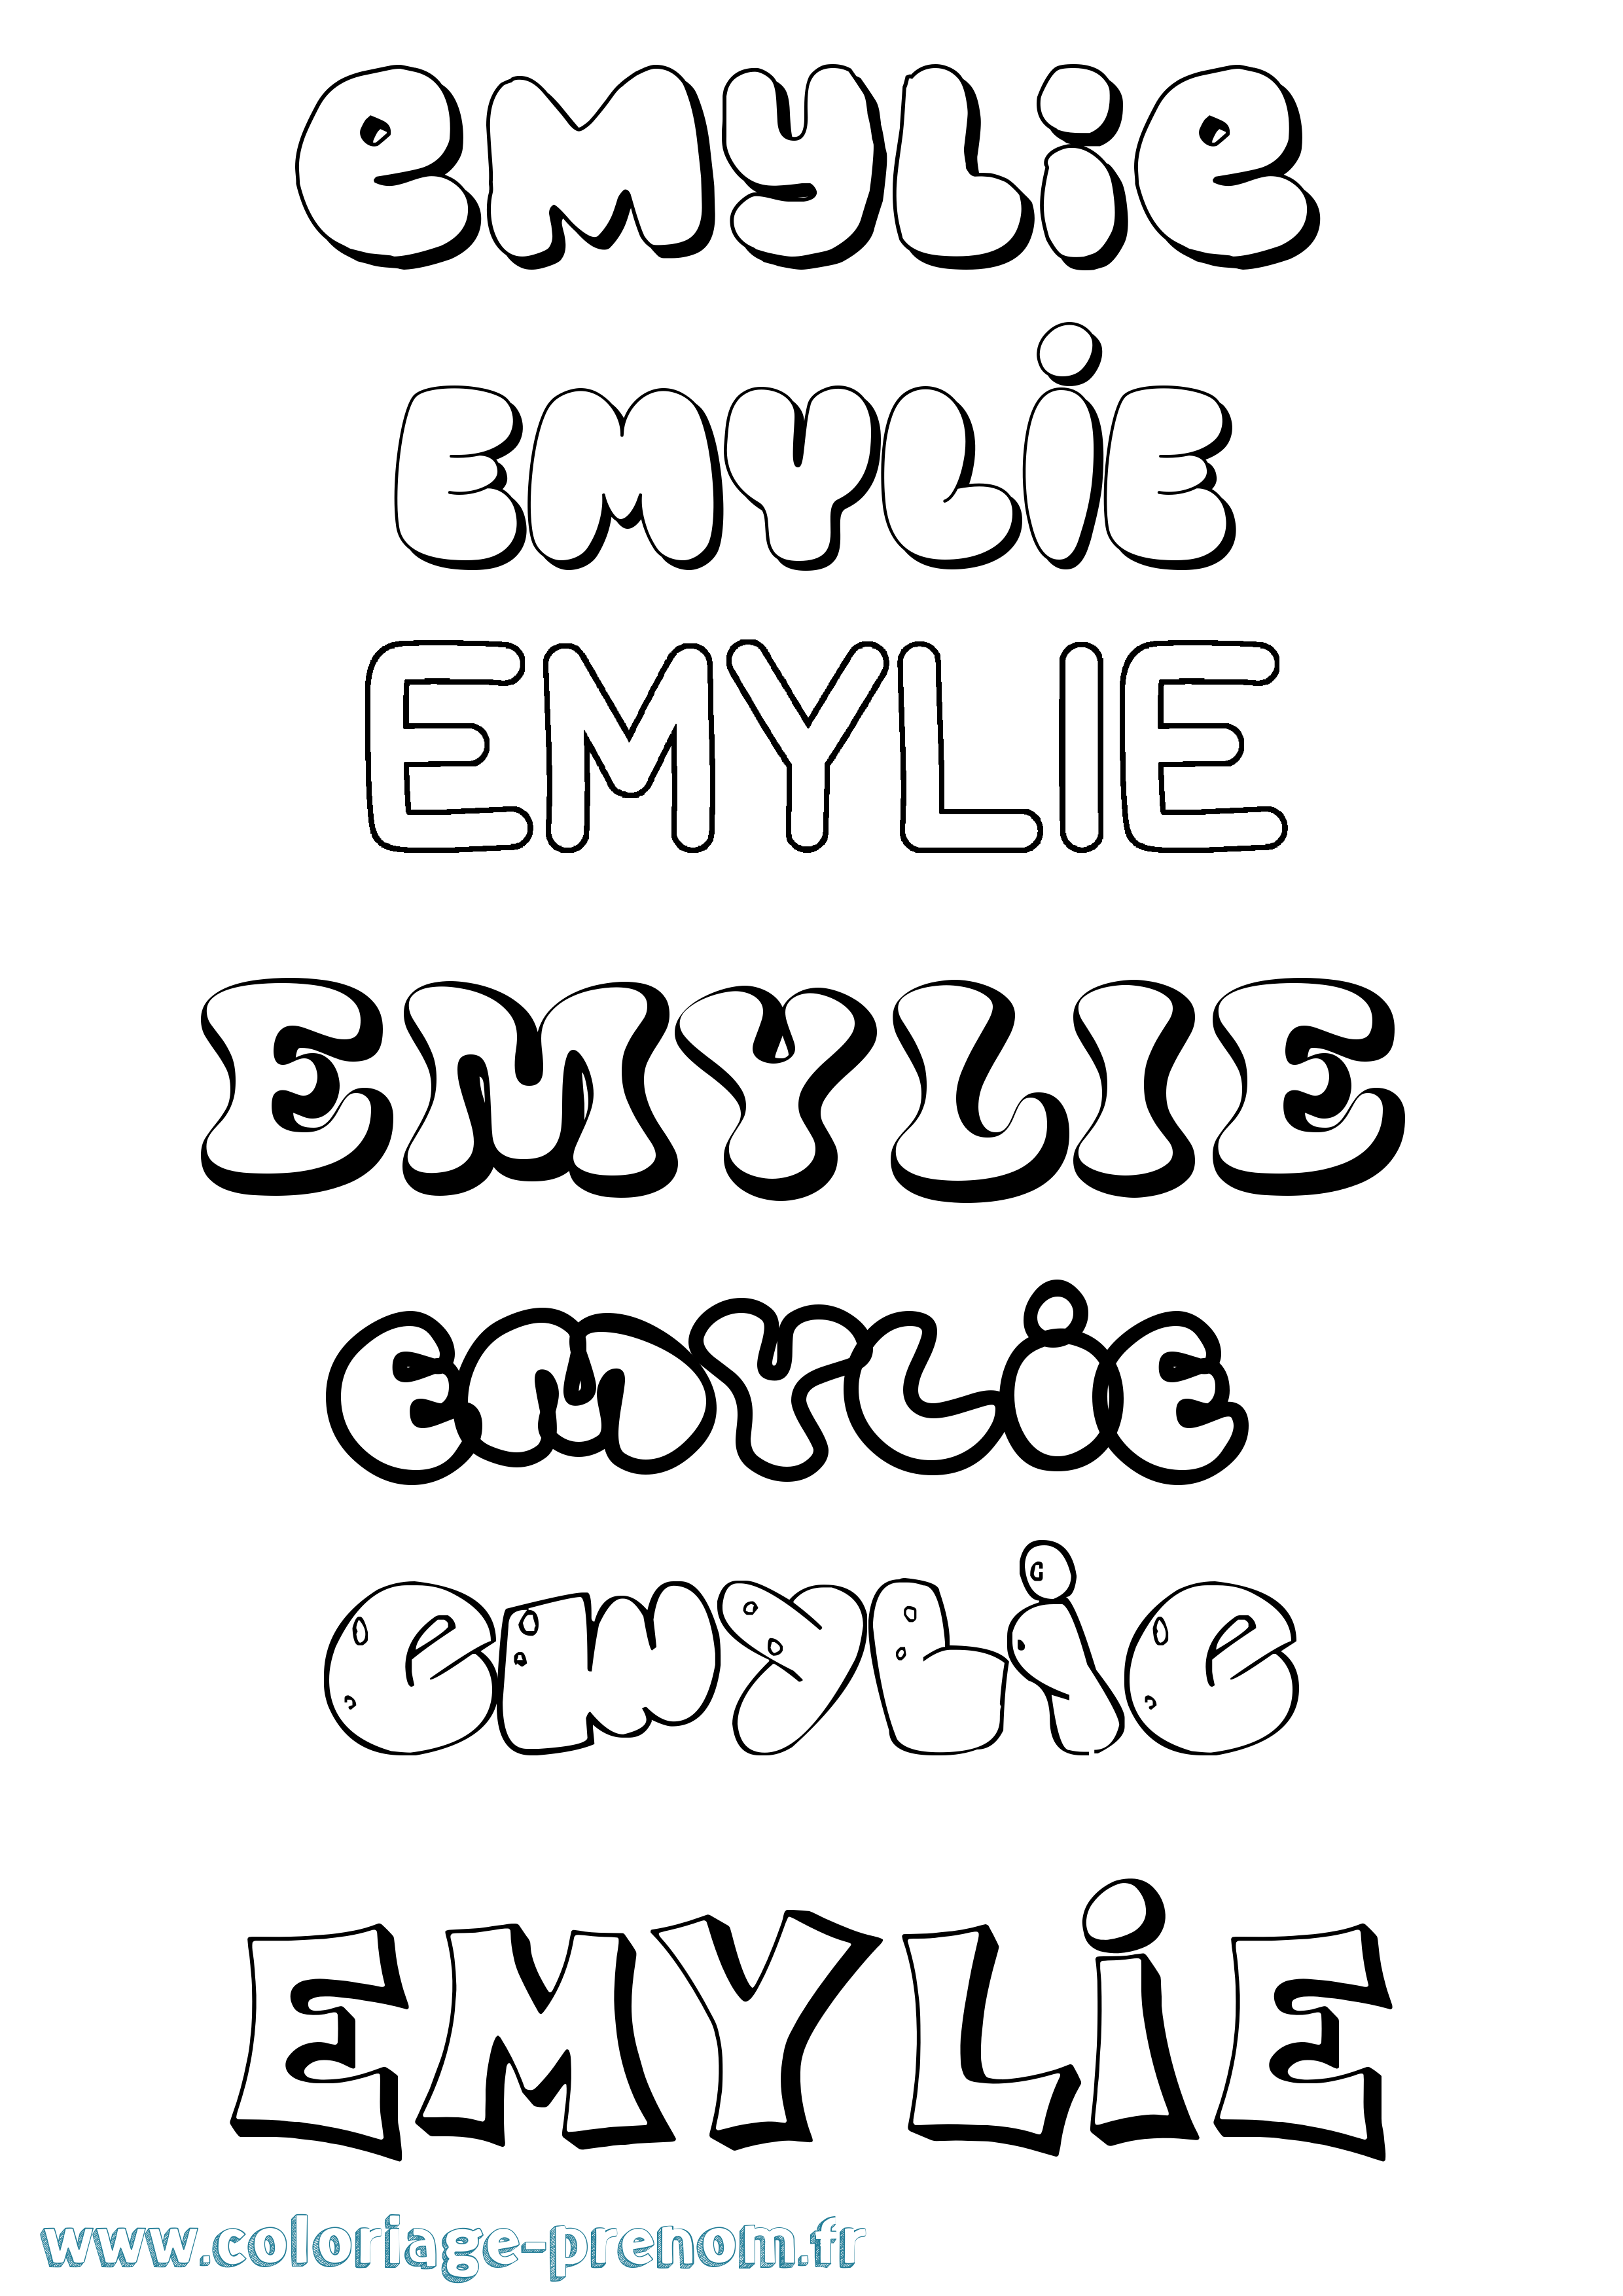 Coloriage prénom Emylie Bubble